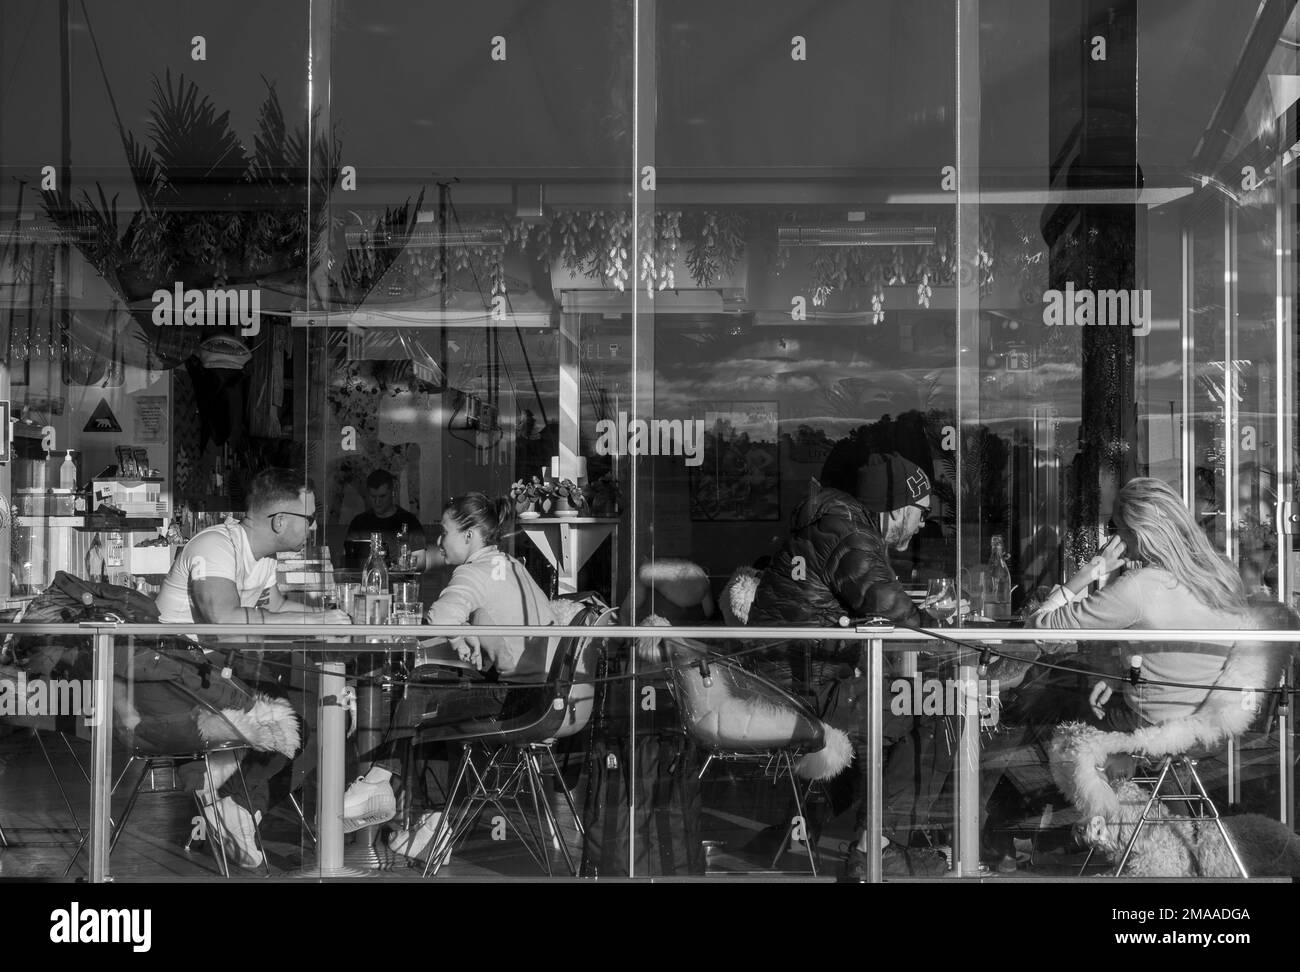 Junge Paare sitzen an Tischen in der Kongen Marina Beach Bar & Restaurant, die an einem sonnigen Tag durch eine Glasfassade mit Reflexionen gesehen werden. Oslo, Norwegen. Stockfoto